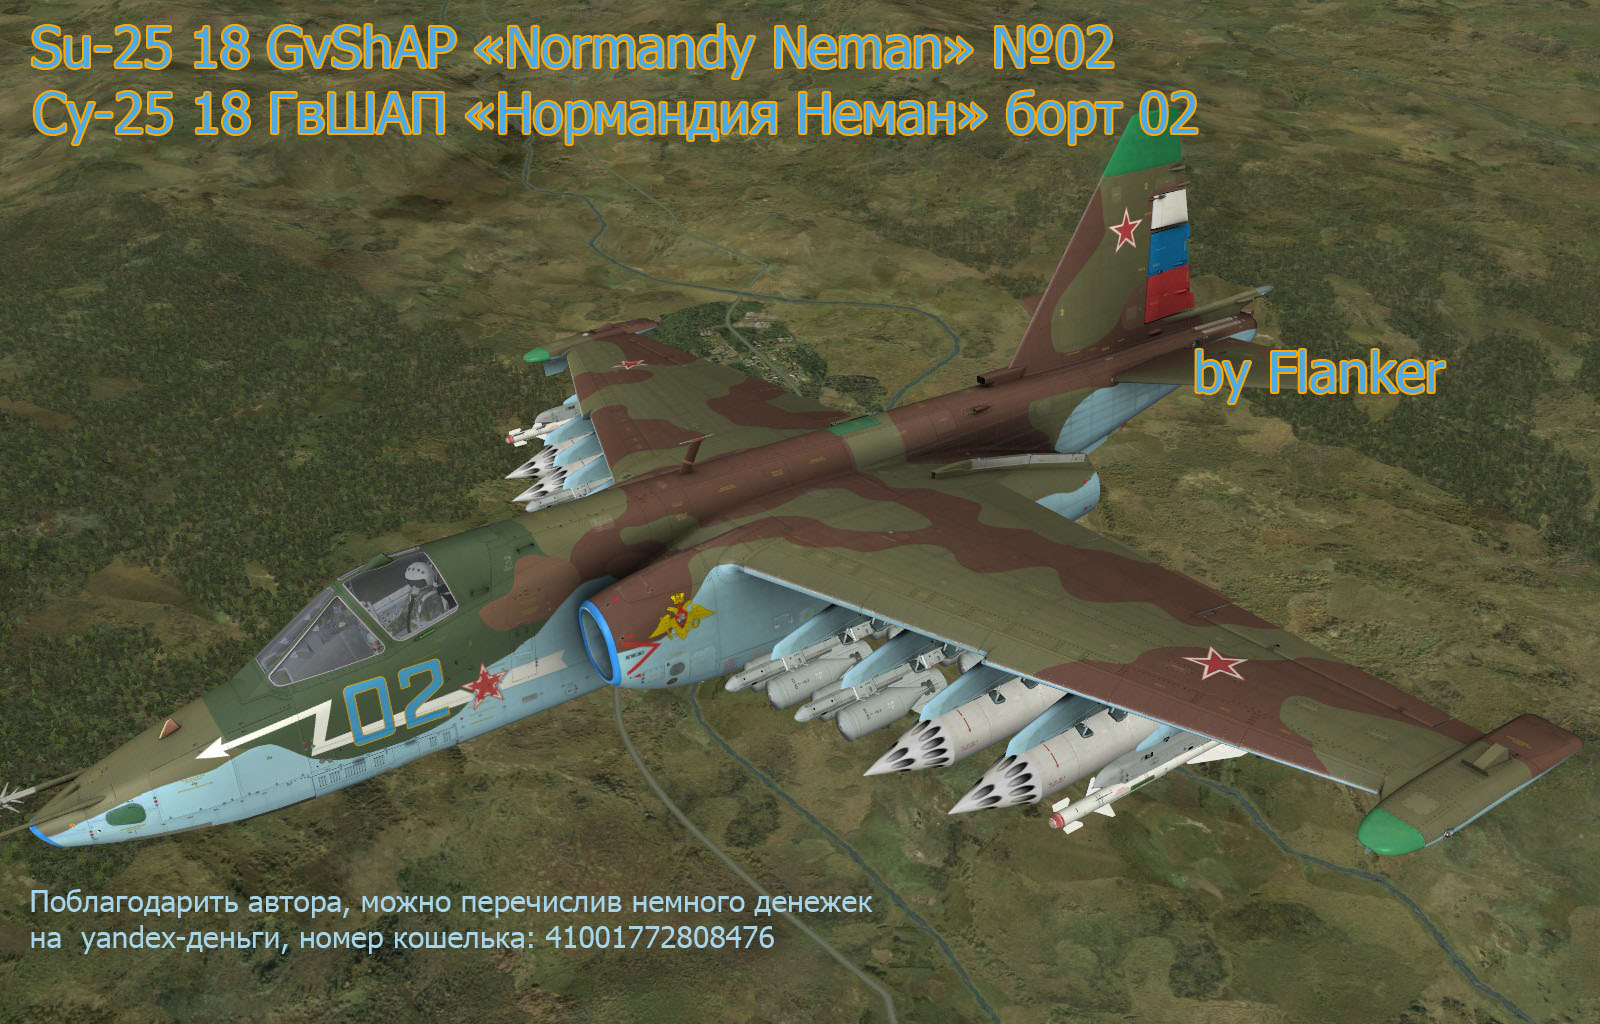 Нормандия неман 25. Су-25 Нормандия Неман. DCS Су 25. Эскадрилья Нормандия Неман. Су-25 борт 02.